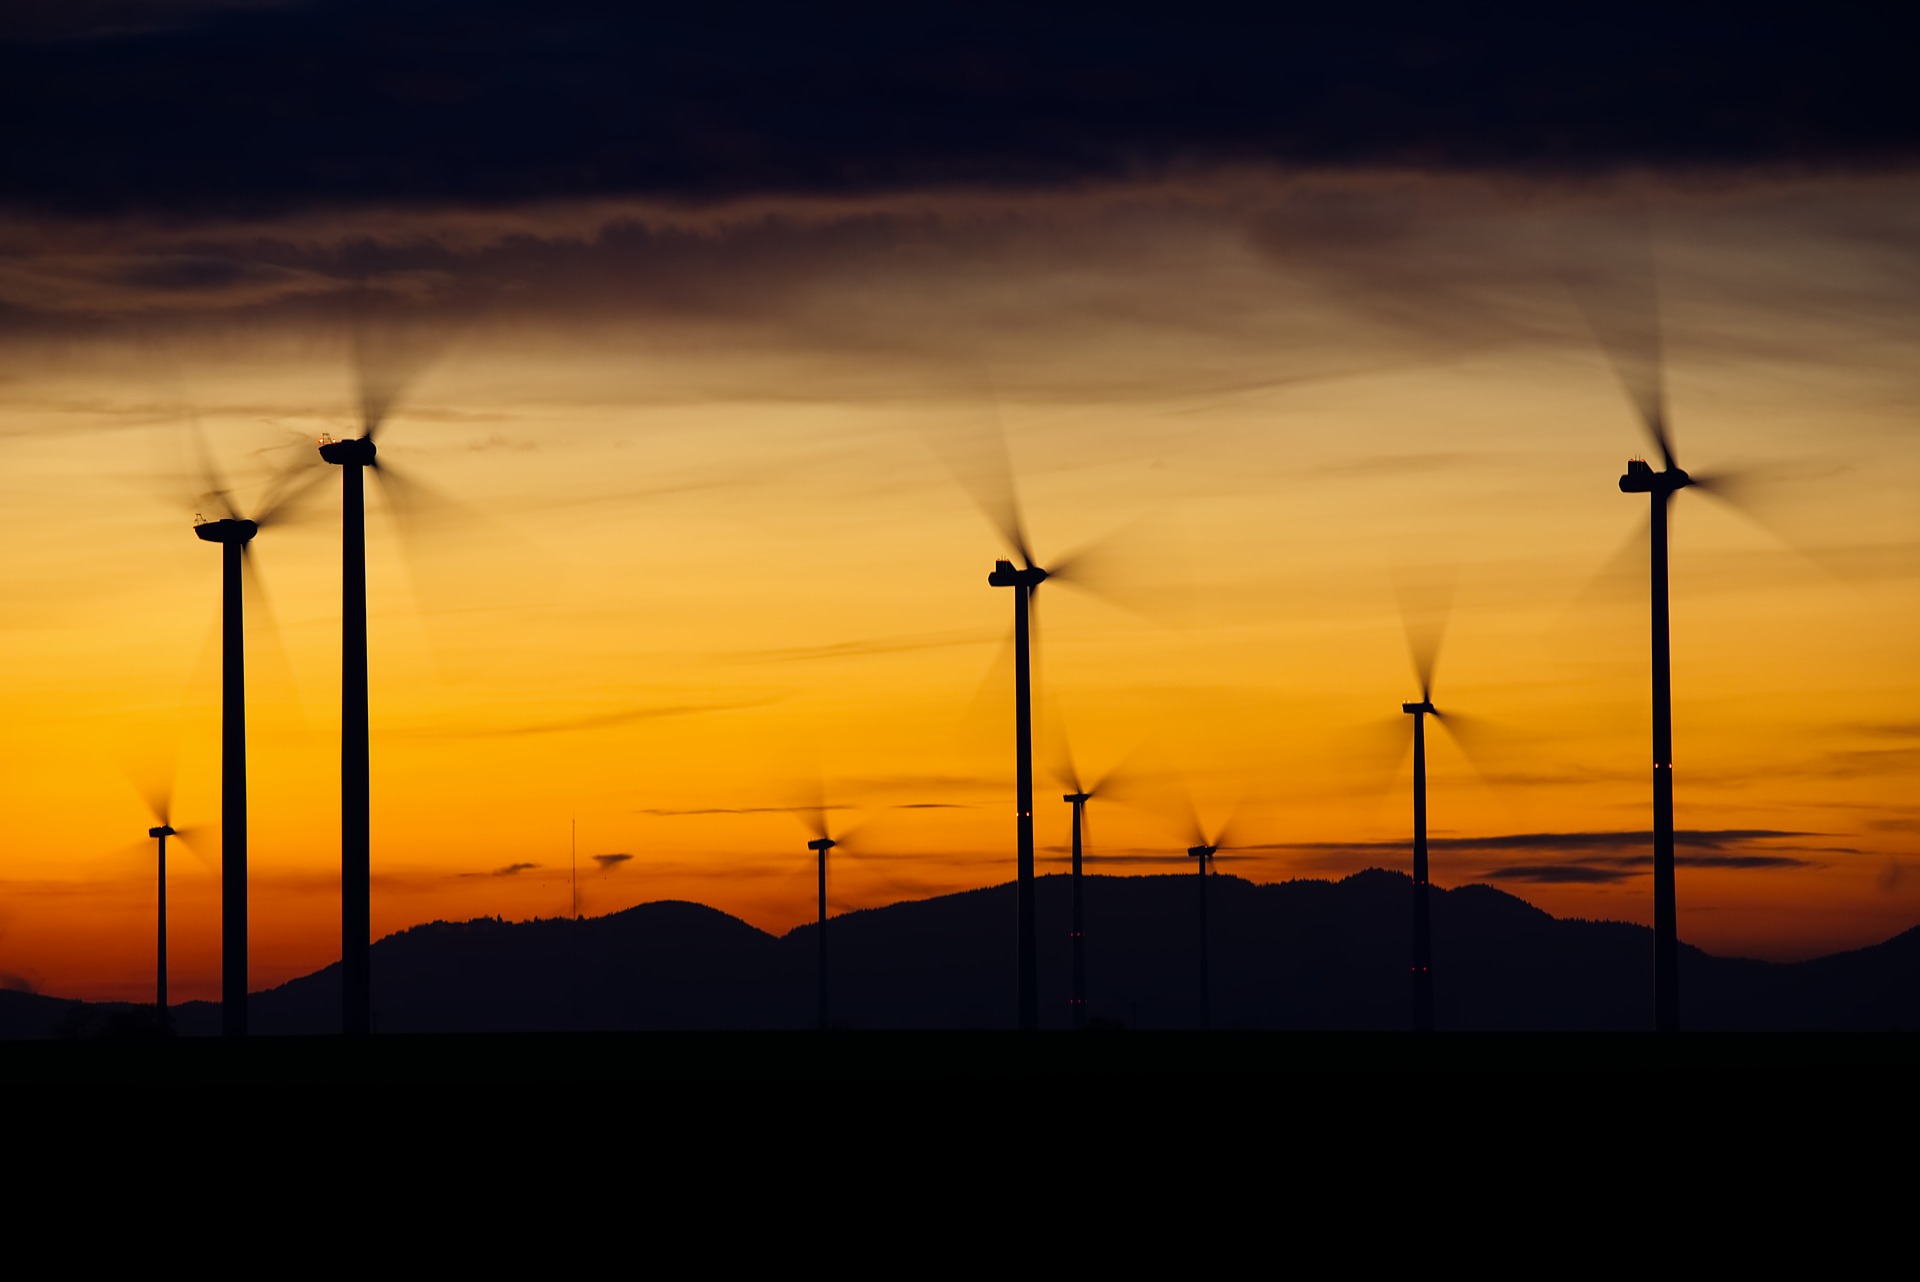 Nicht für jeden ein schöner Anblick: Ein Windpark in Sichtweite der Wohnsiedlung. /Foto: Piaxabay/ distel2610)